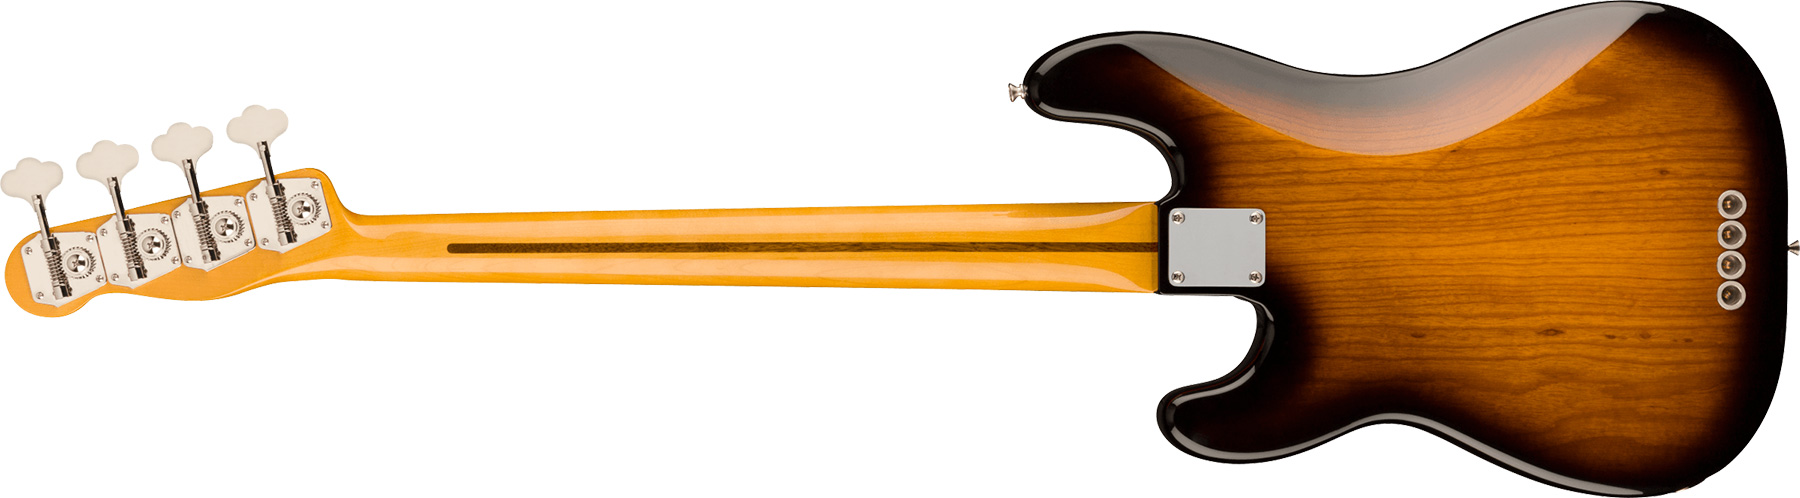 Fender Precision Bass 1954 American Vintage Ii Usa Mn - 2-color Sunburst - Bajo eléctrico de cuerpo sólido - Variation 1